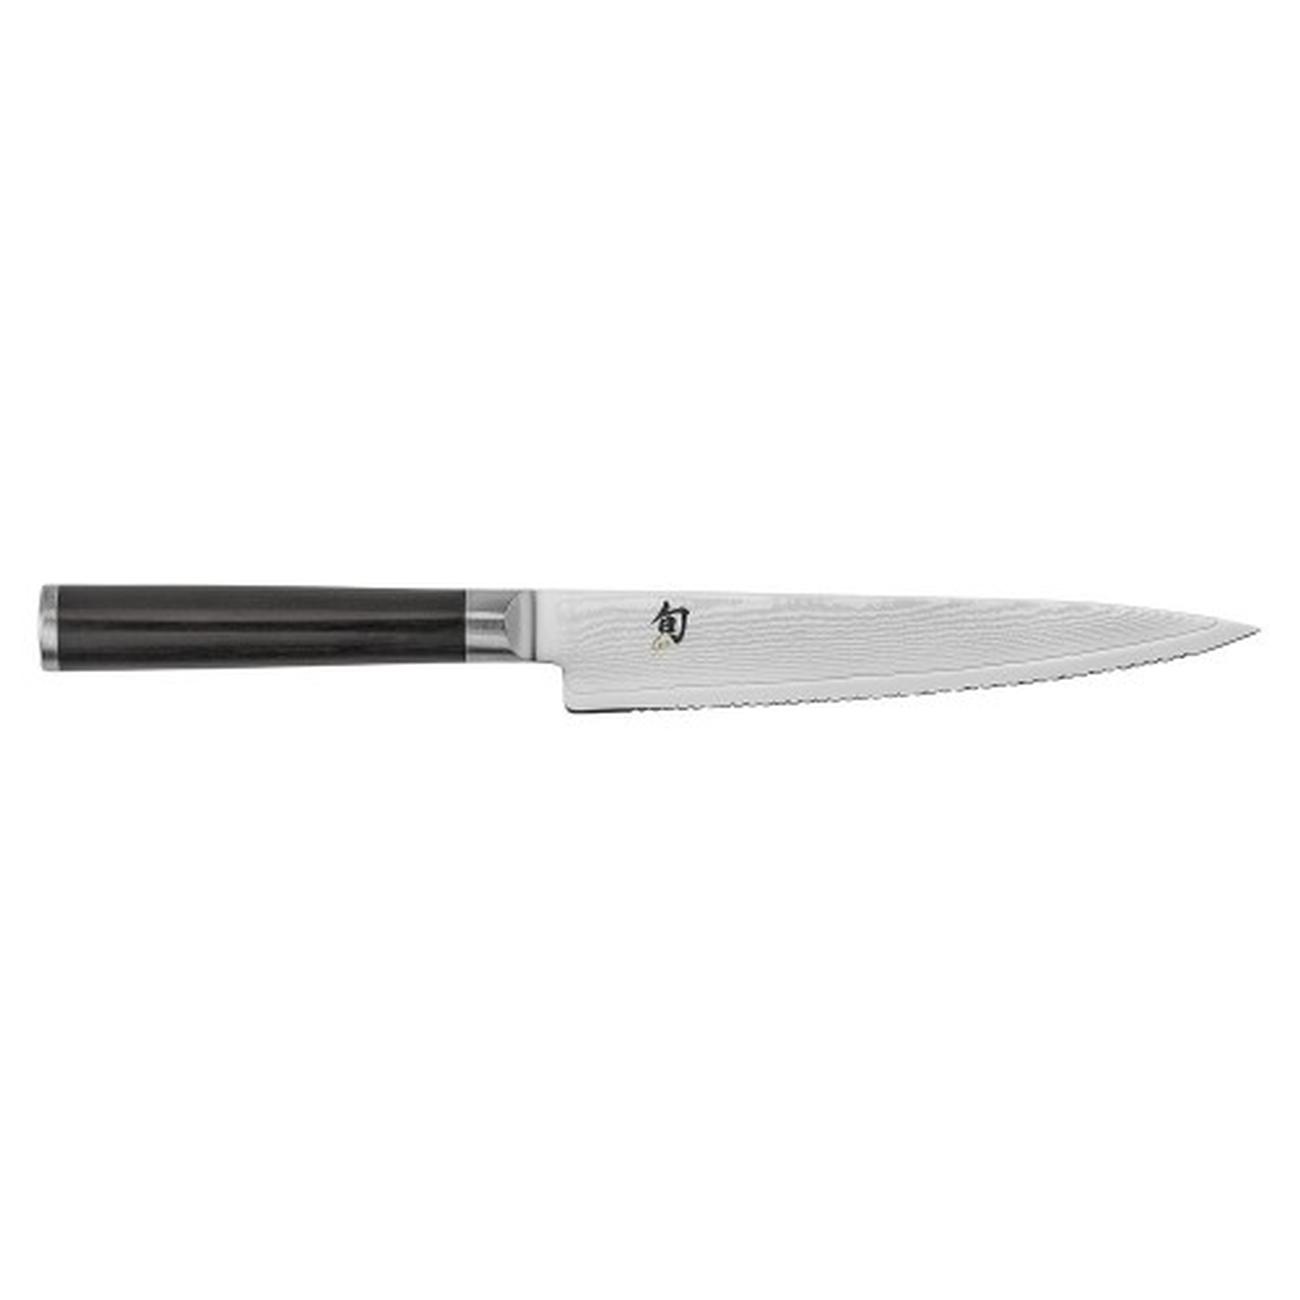 kai-shun-utility-knife-serrated-edge-6 - Kai Shun Serrated Utility Knife 6 Inch